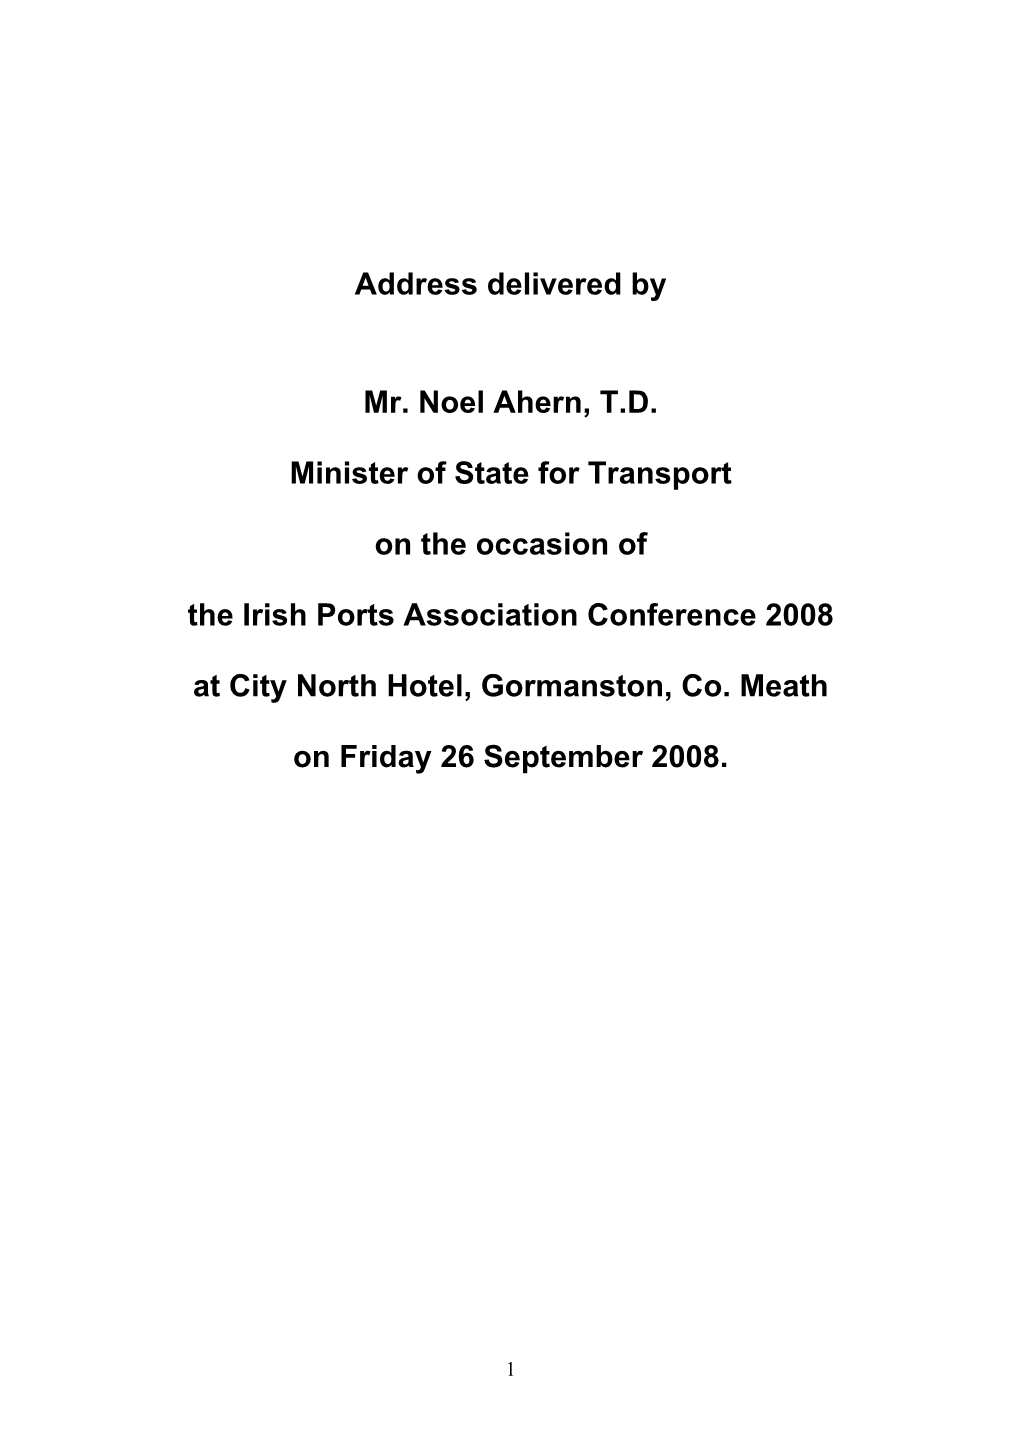 Address Delivered by Mr. Noel Ahern, TD